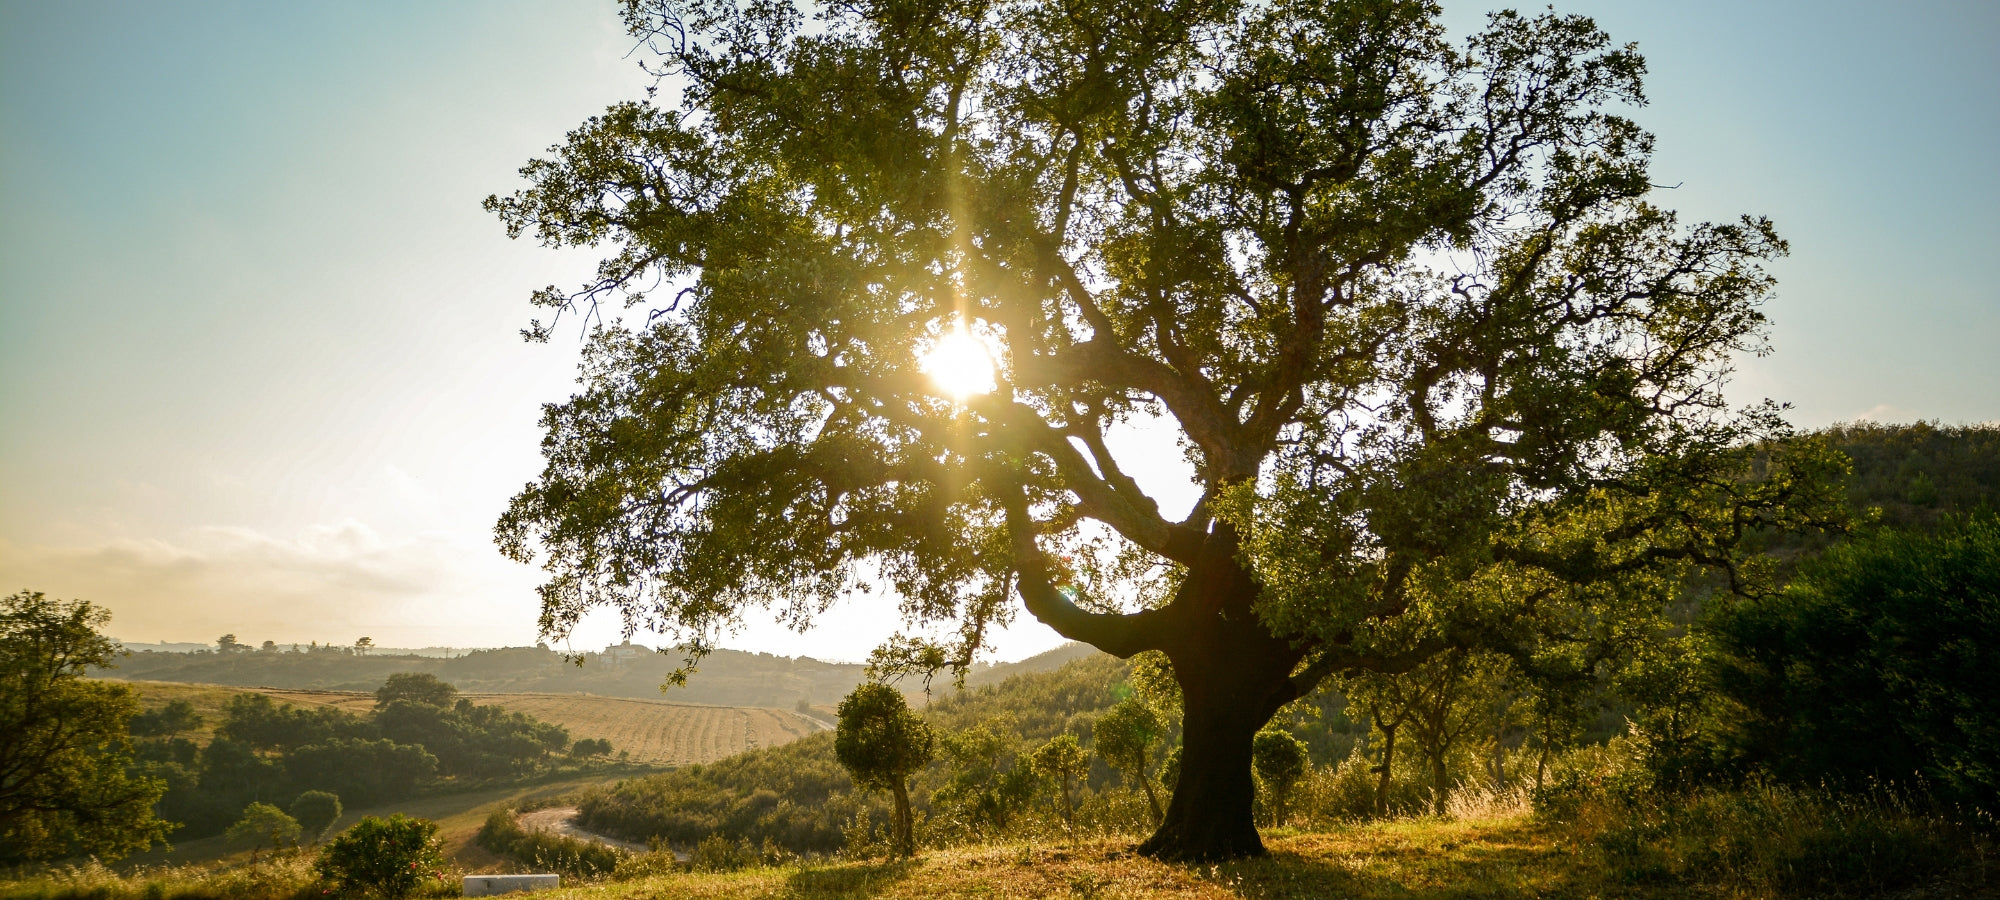 Dieses Foto zeigt eine malerische Landschaft im Alentejo, Portugal. Die warme Abendsonne taucht die Szenerie in goldenes Licht und lässt den blauen Himmel und die grünen Bäume lebendig erscheinen. Ein friedlicher Ort, der zur Entspannung einlädt.